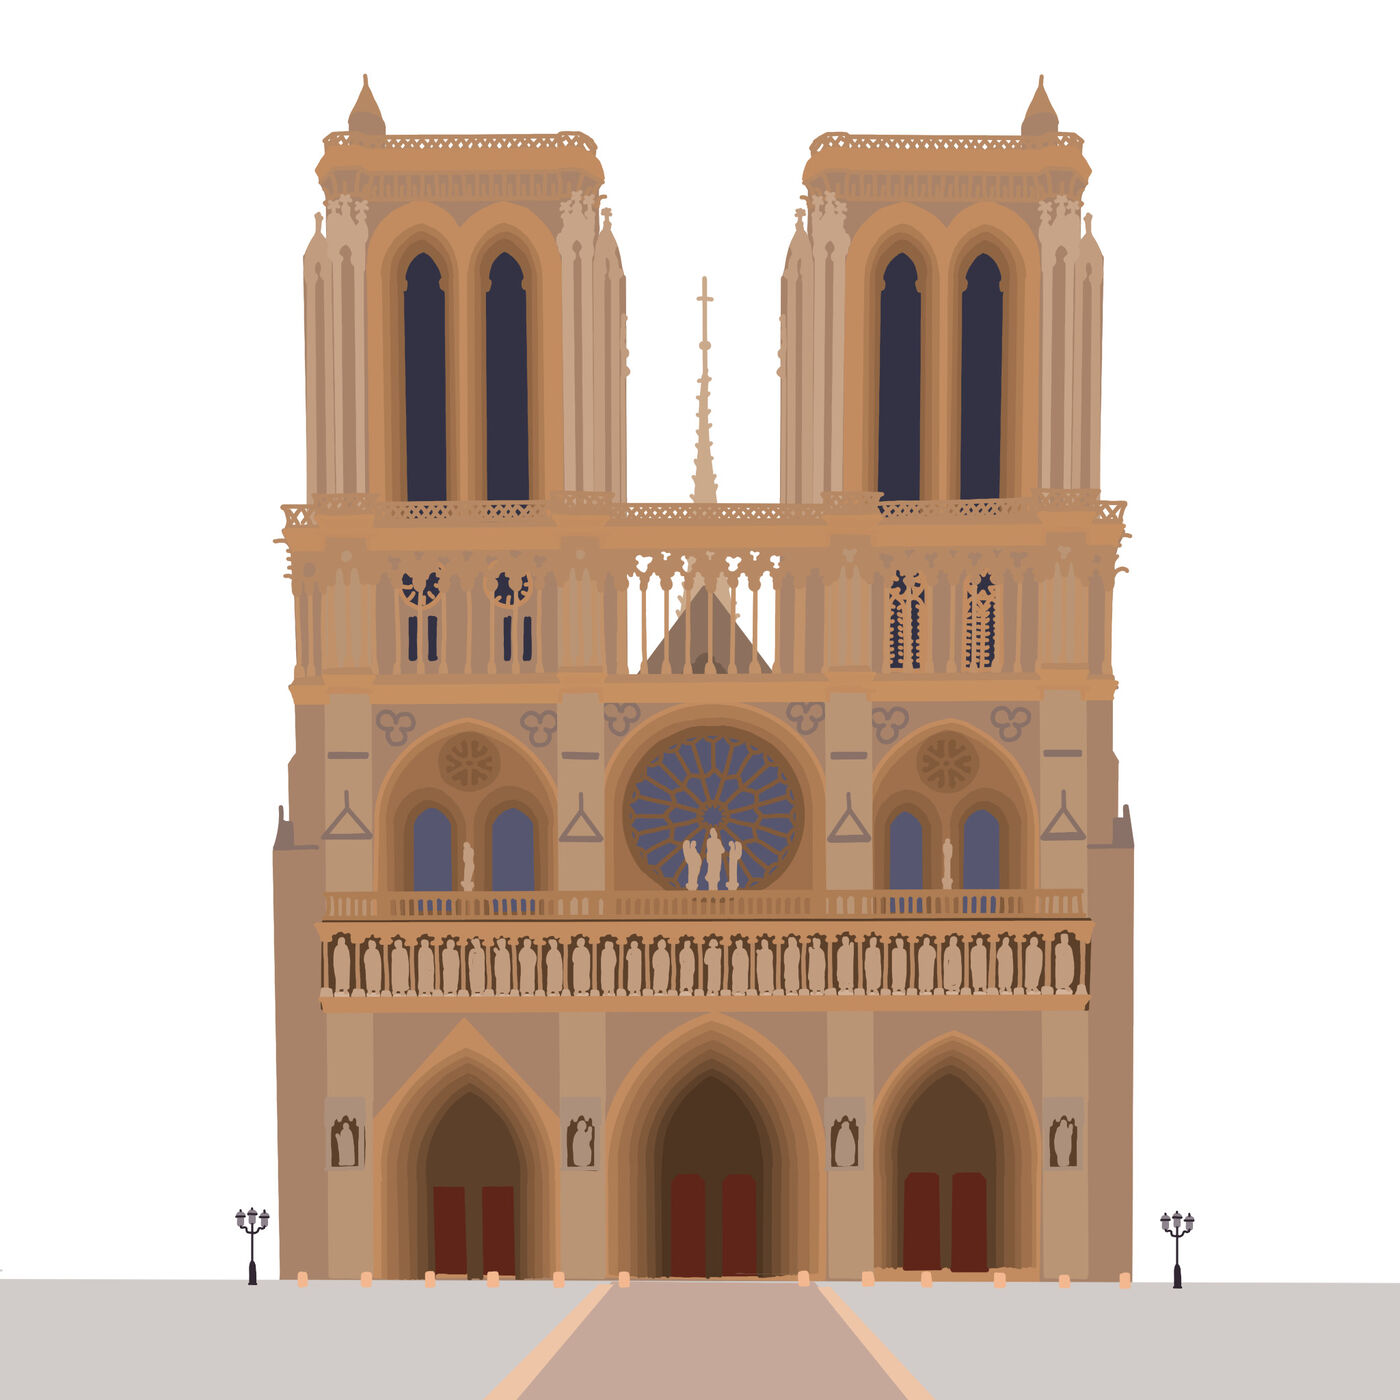 Destination: Notre Dame - Part 2